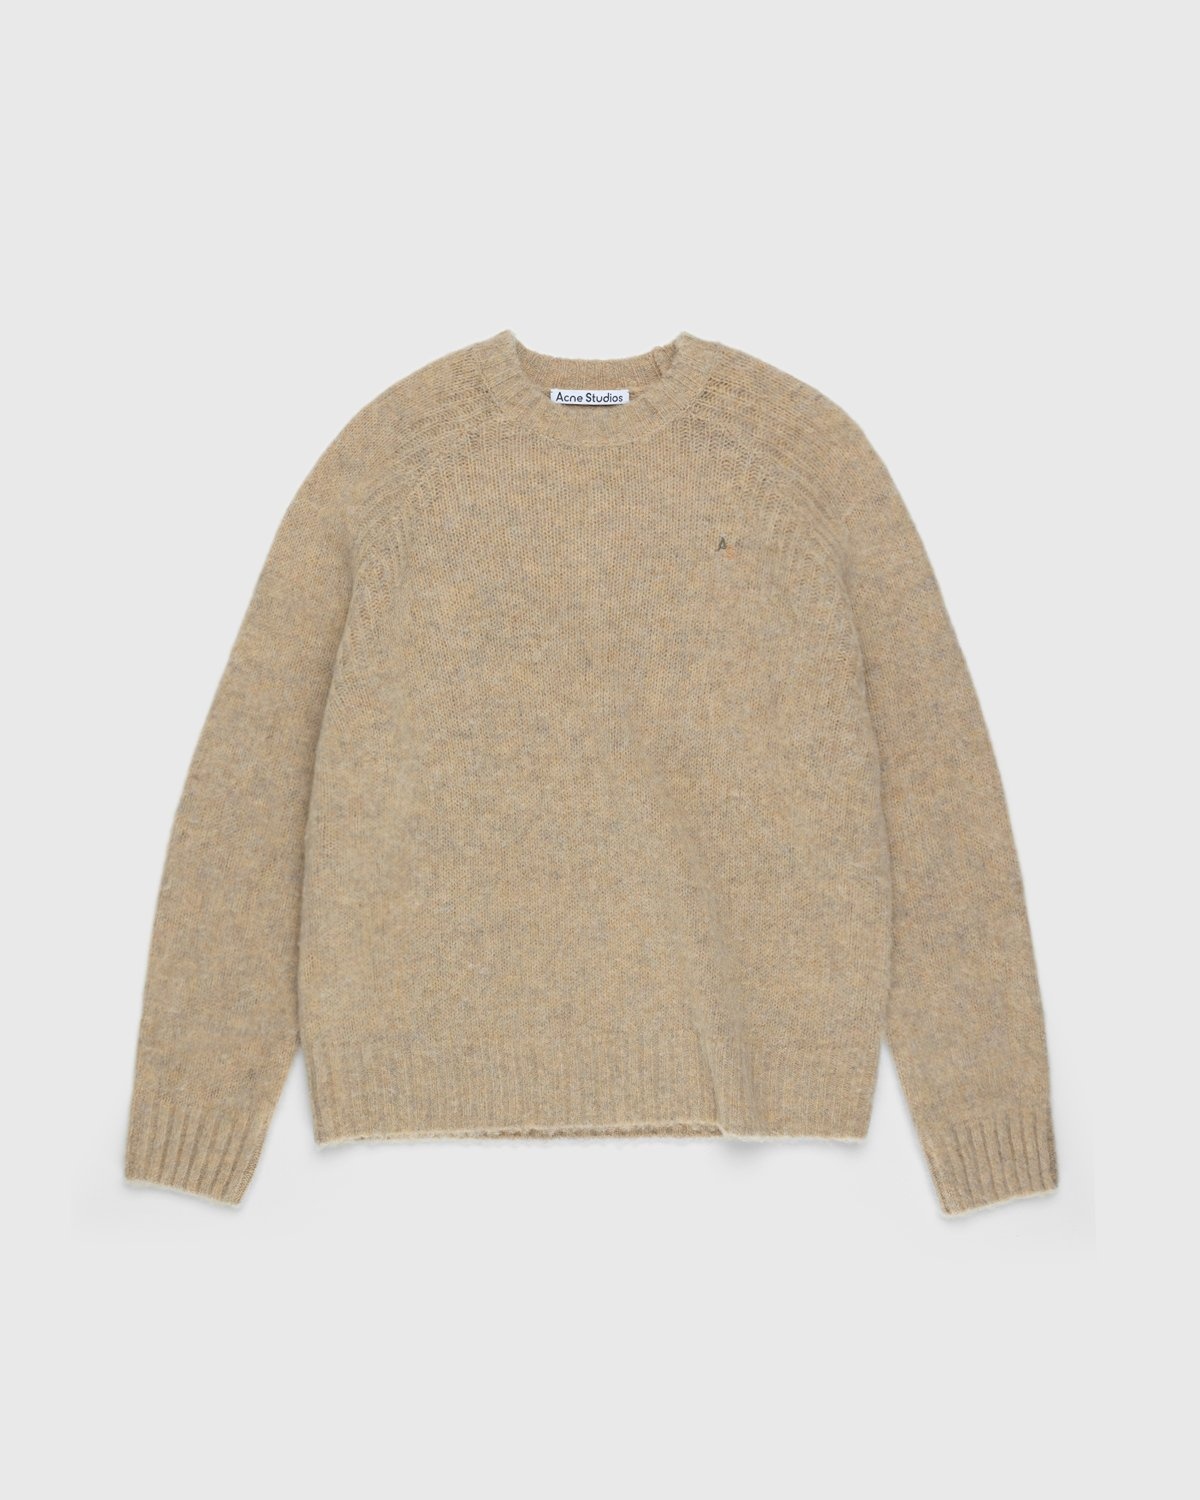 Acne Studios – Brushed Wool Crewneck Sweater Toffee Brown - Knitwear - Brown - Image 1